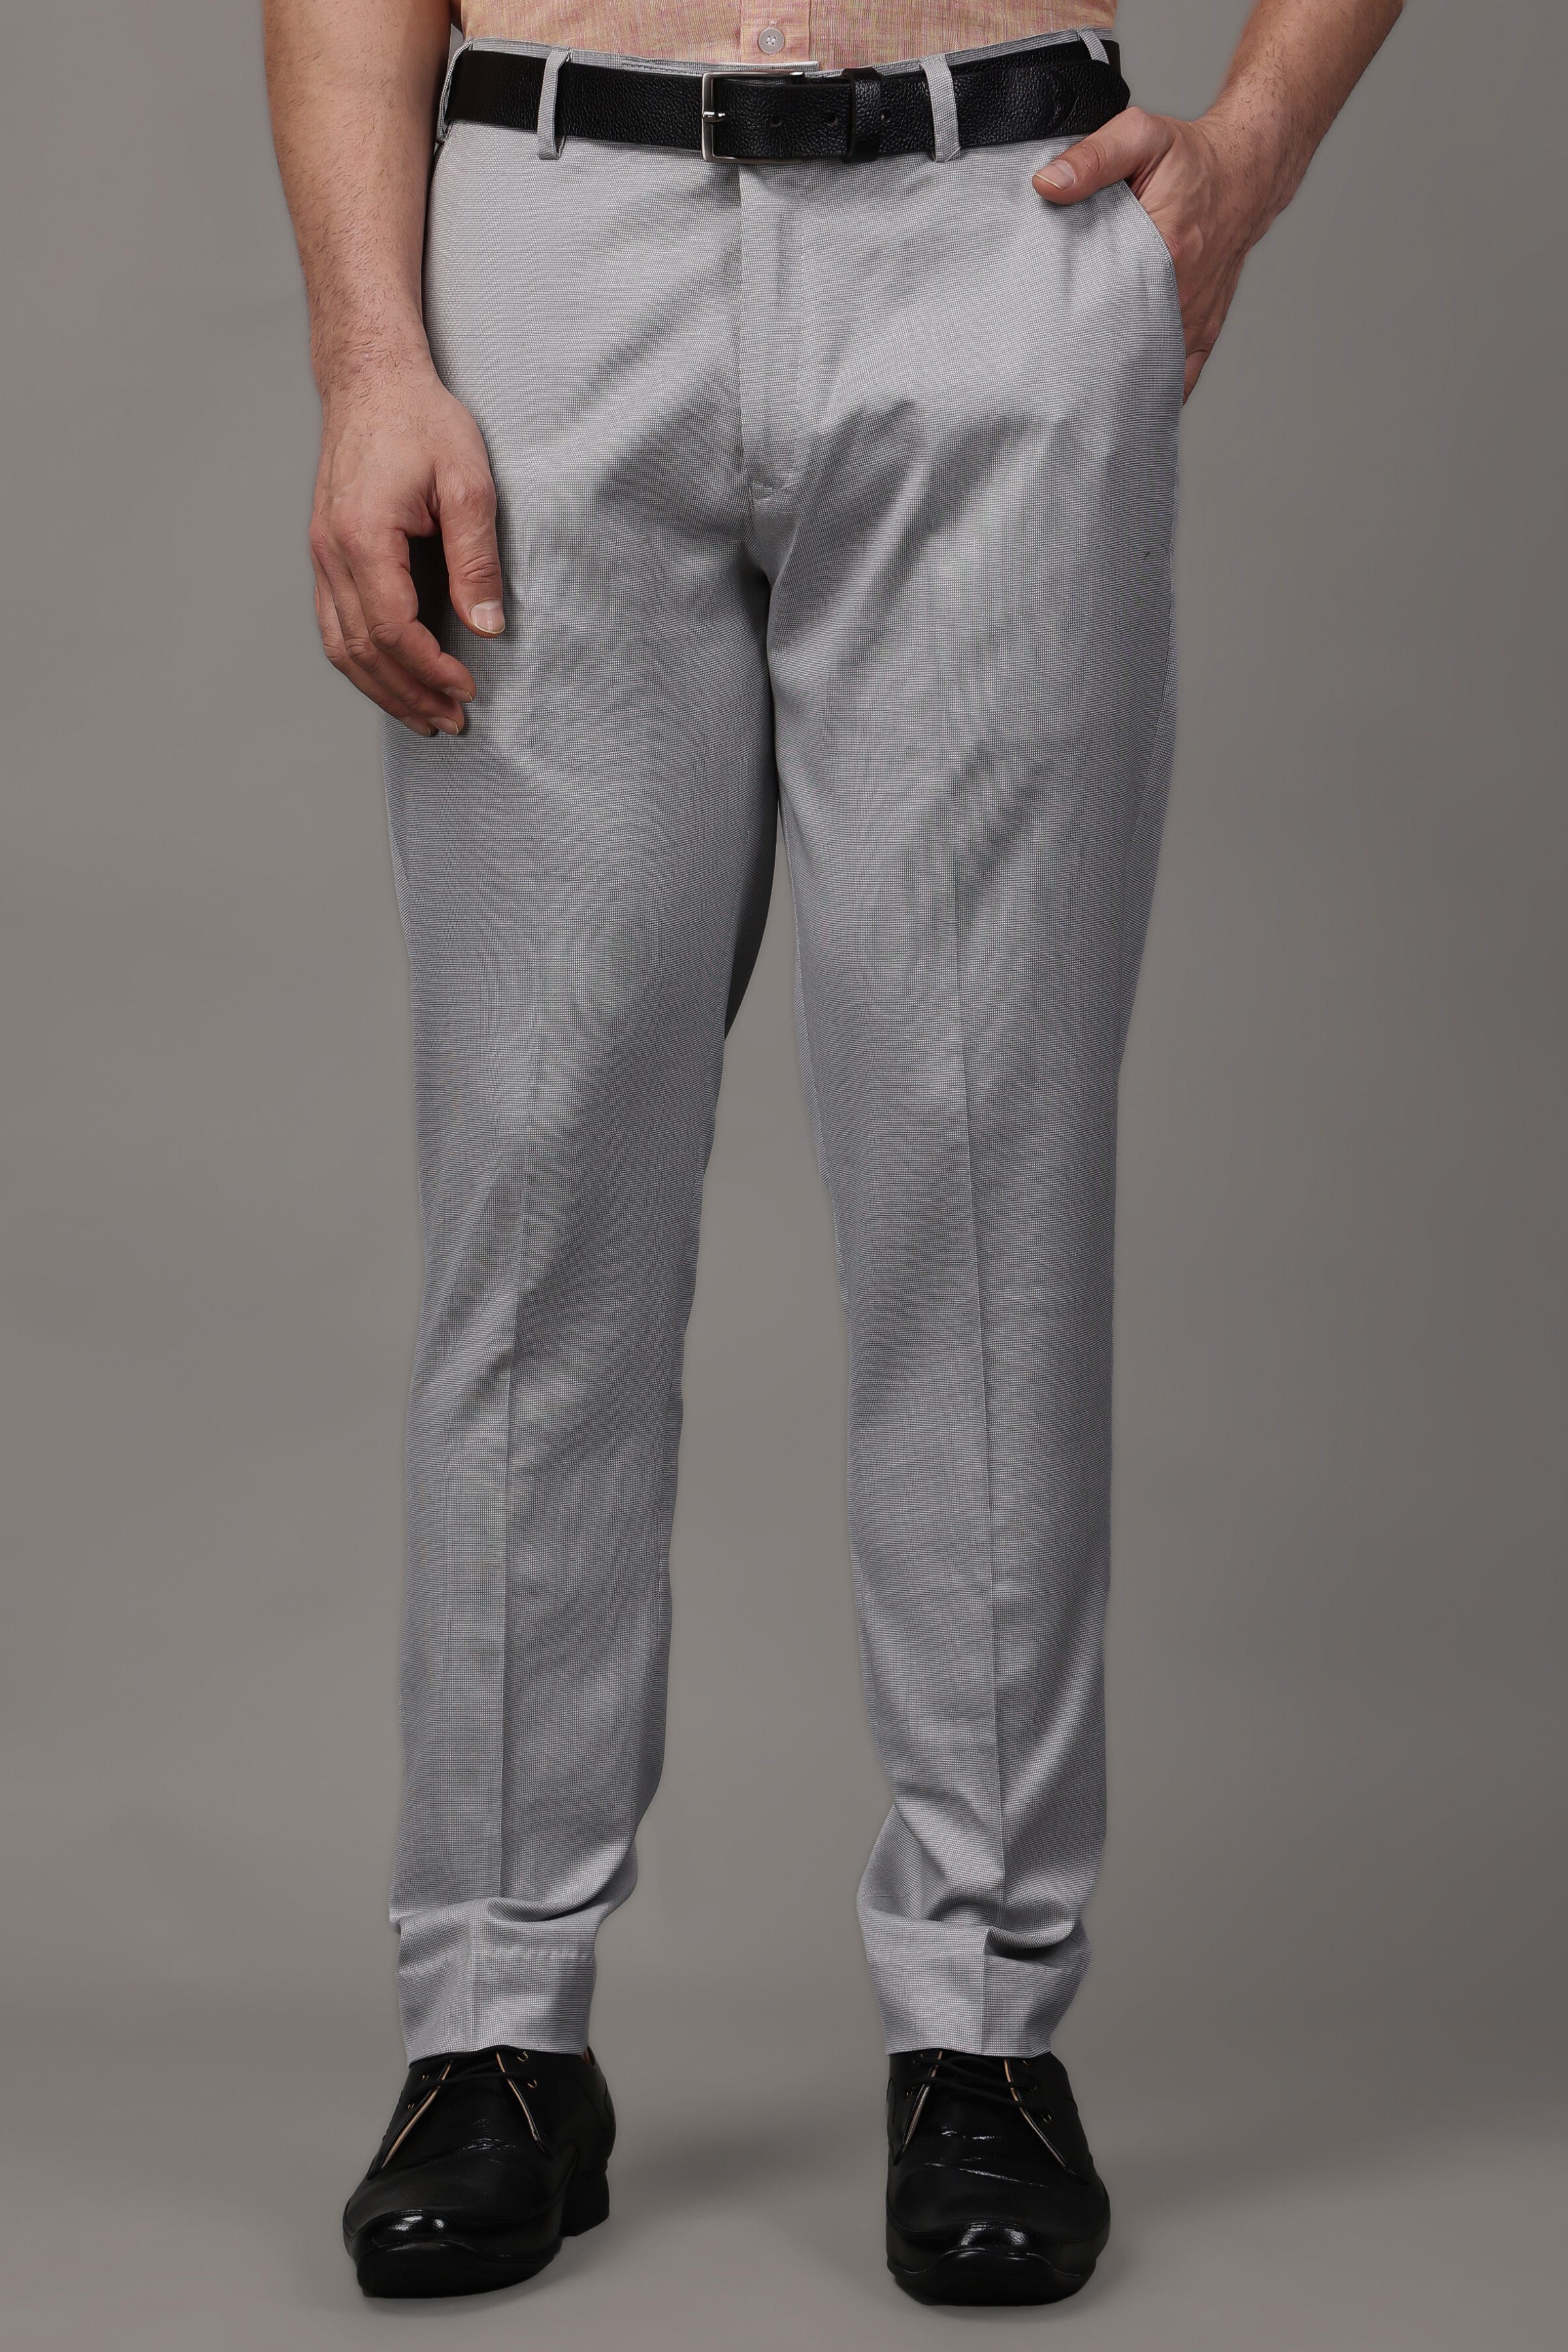 Men's Dress Pants | Nordstrom